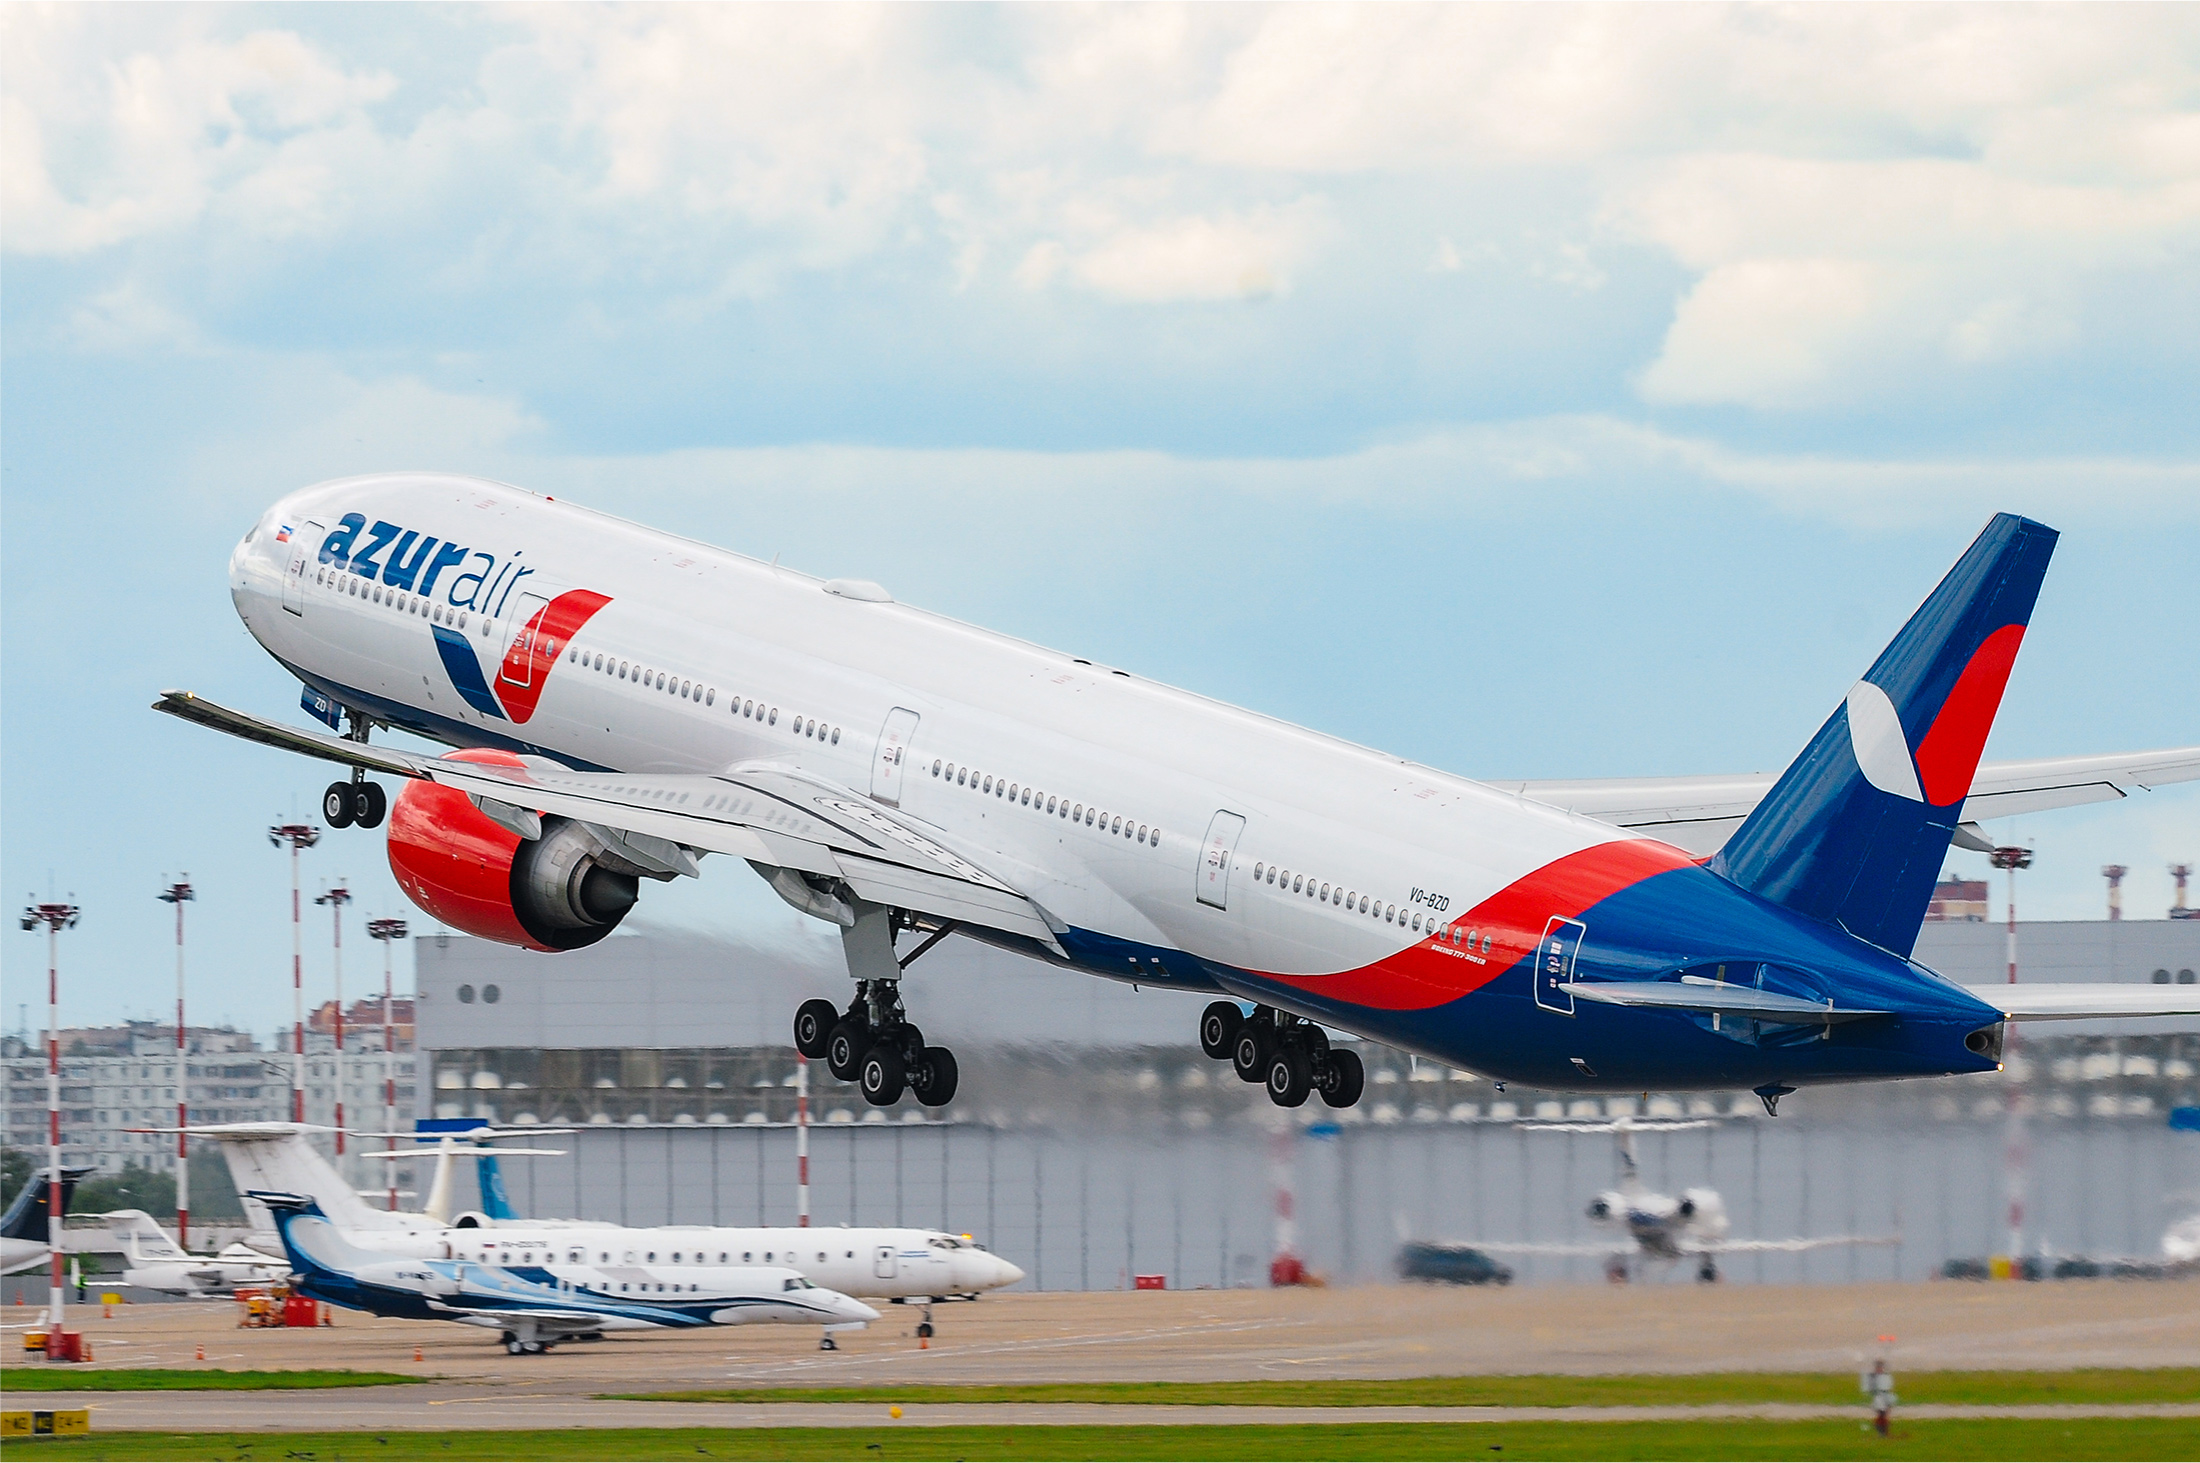 AZUR air, Новости, 12 июля 2019, Авиакомпания AZUR air встретила миллионного пассажира, обслуженного в 2019 году в Международном аэропорту Внуково